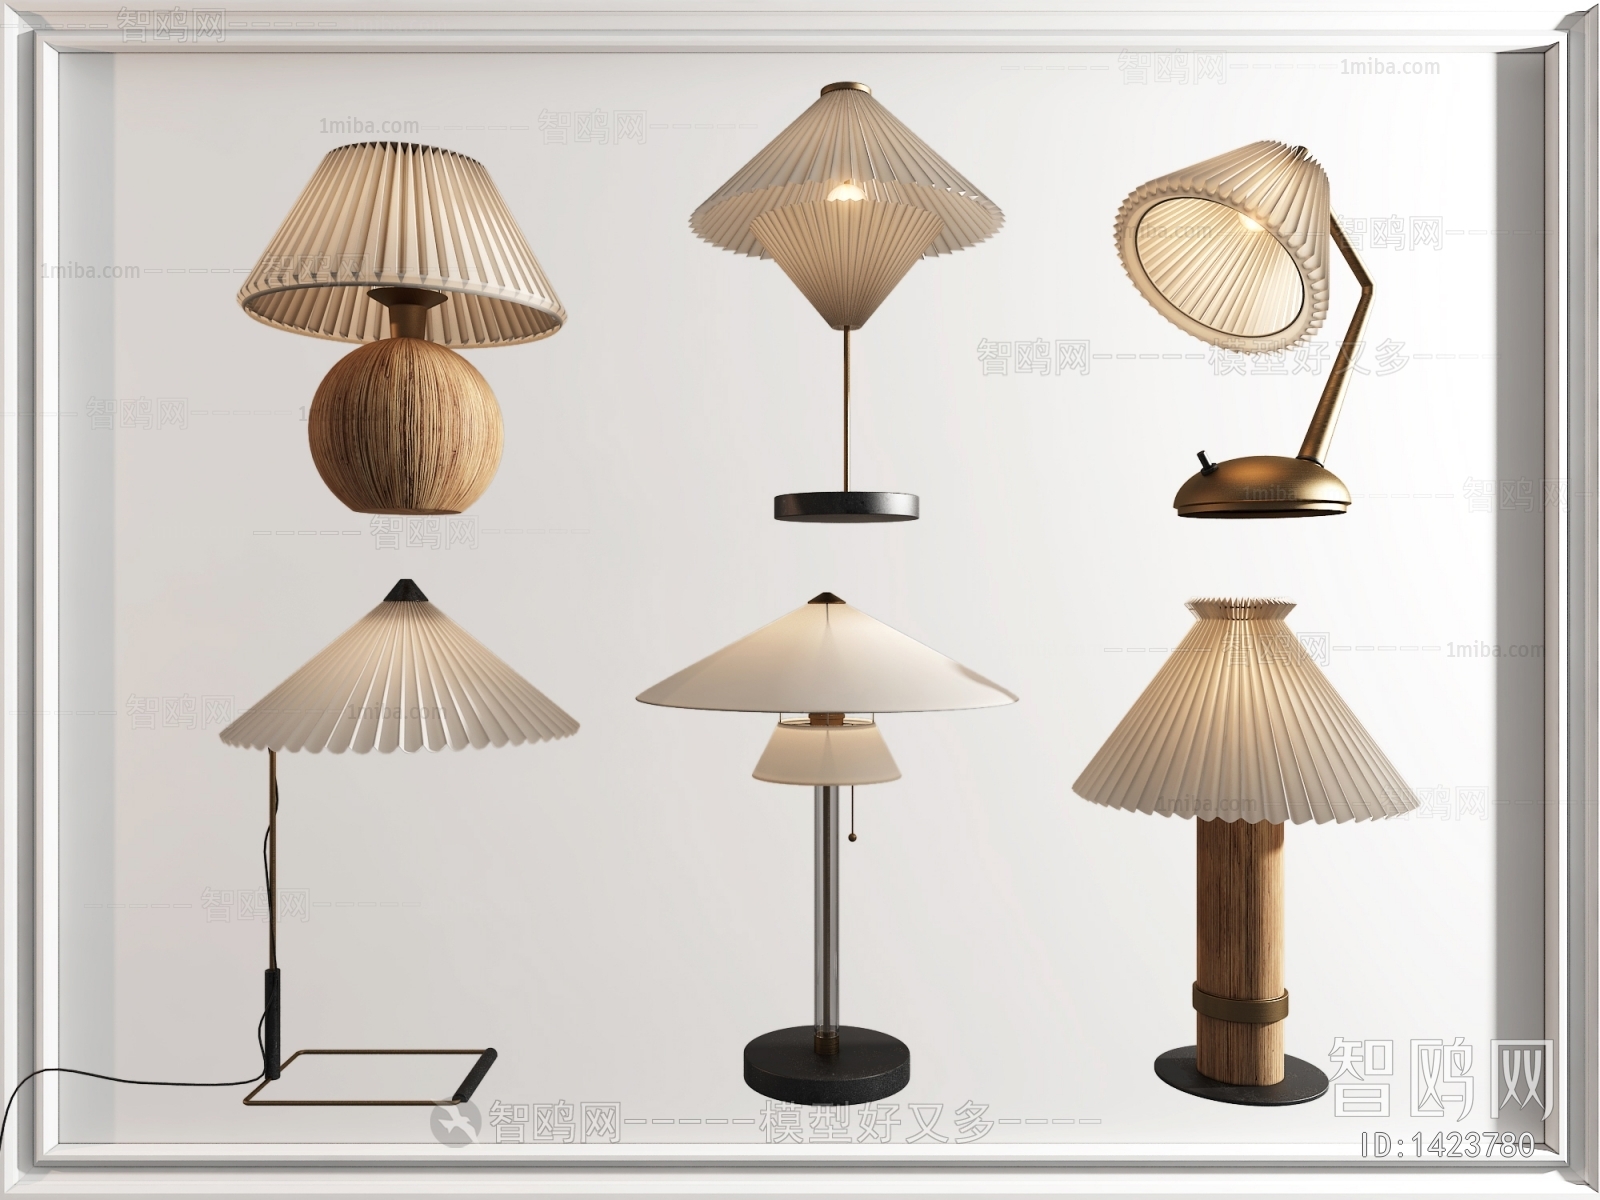 American Style Wabi-sabi Style Table Lamp